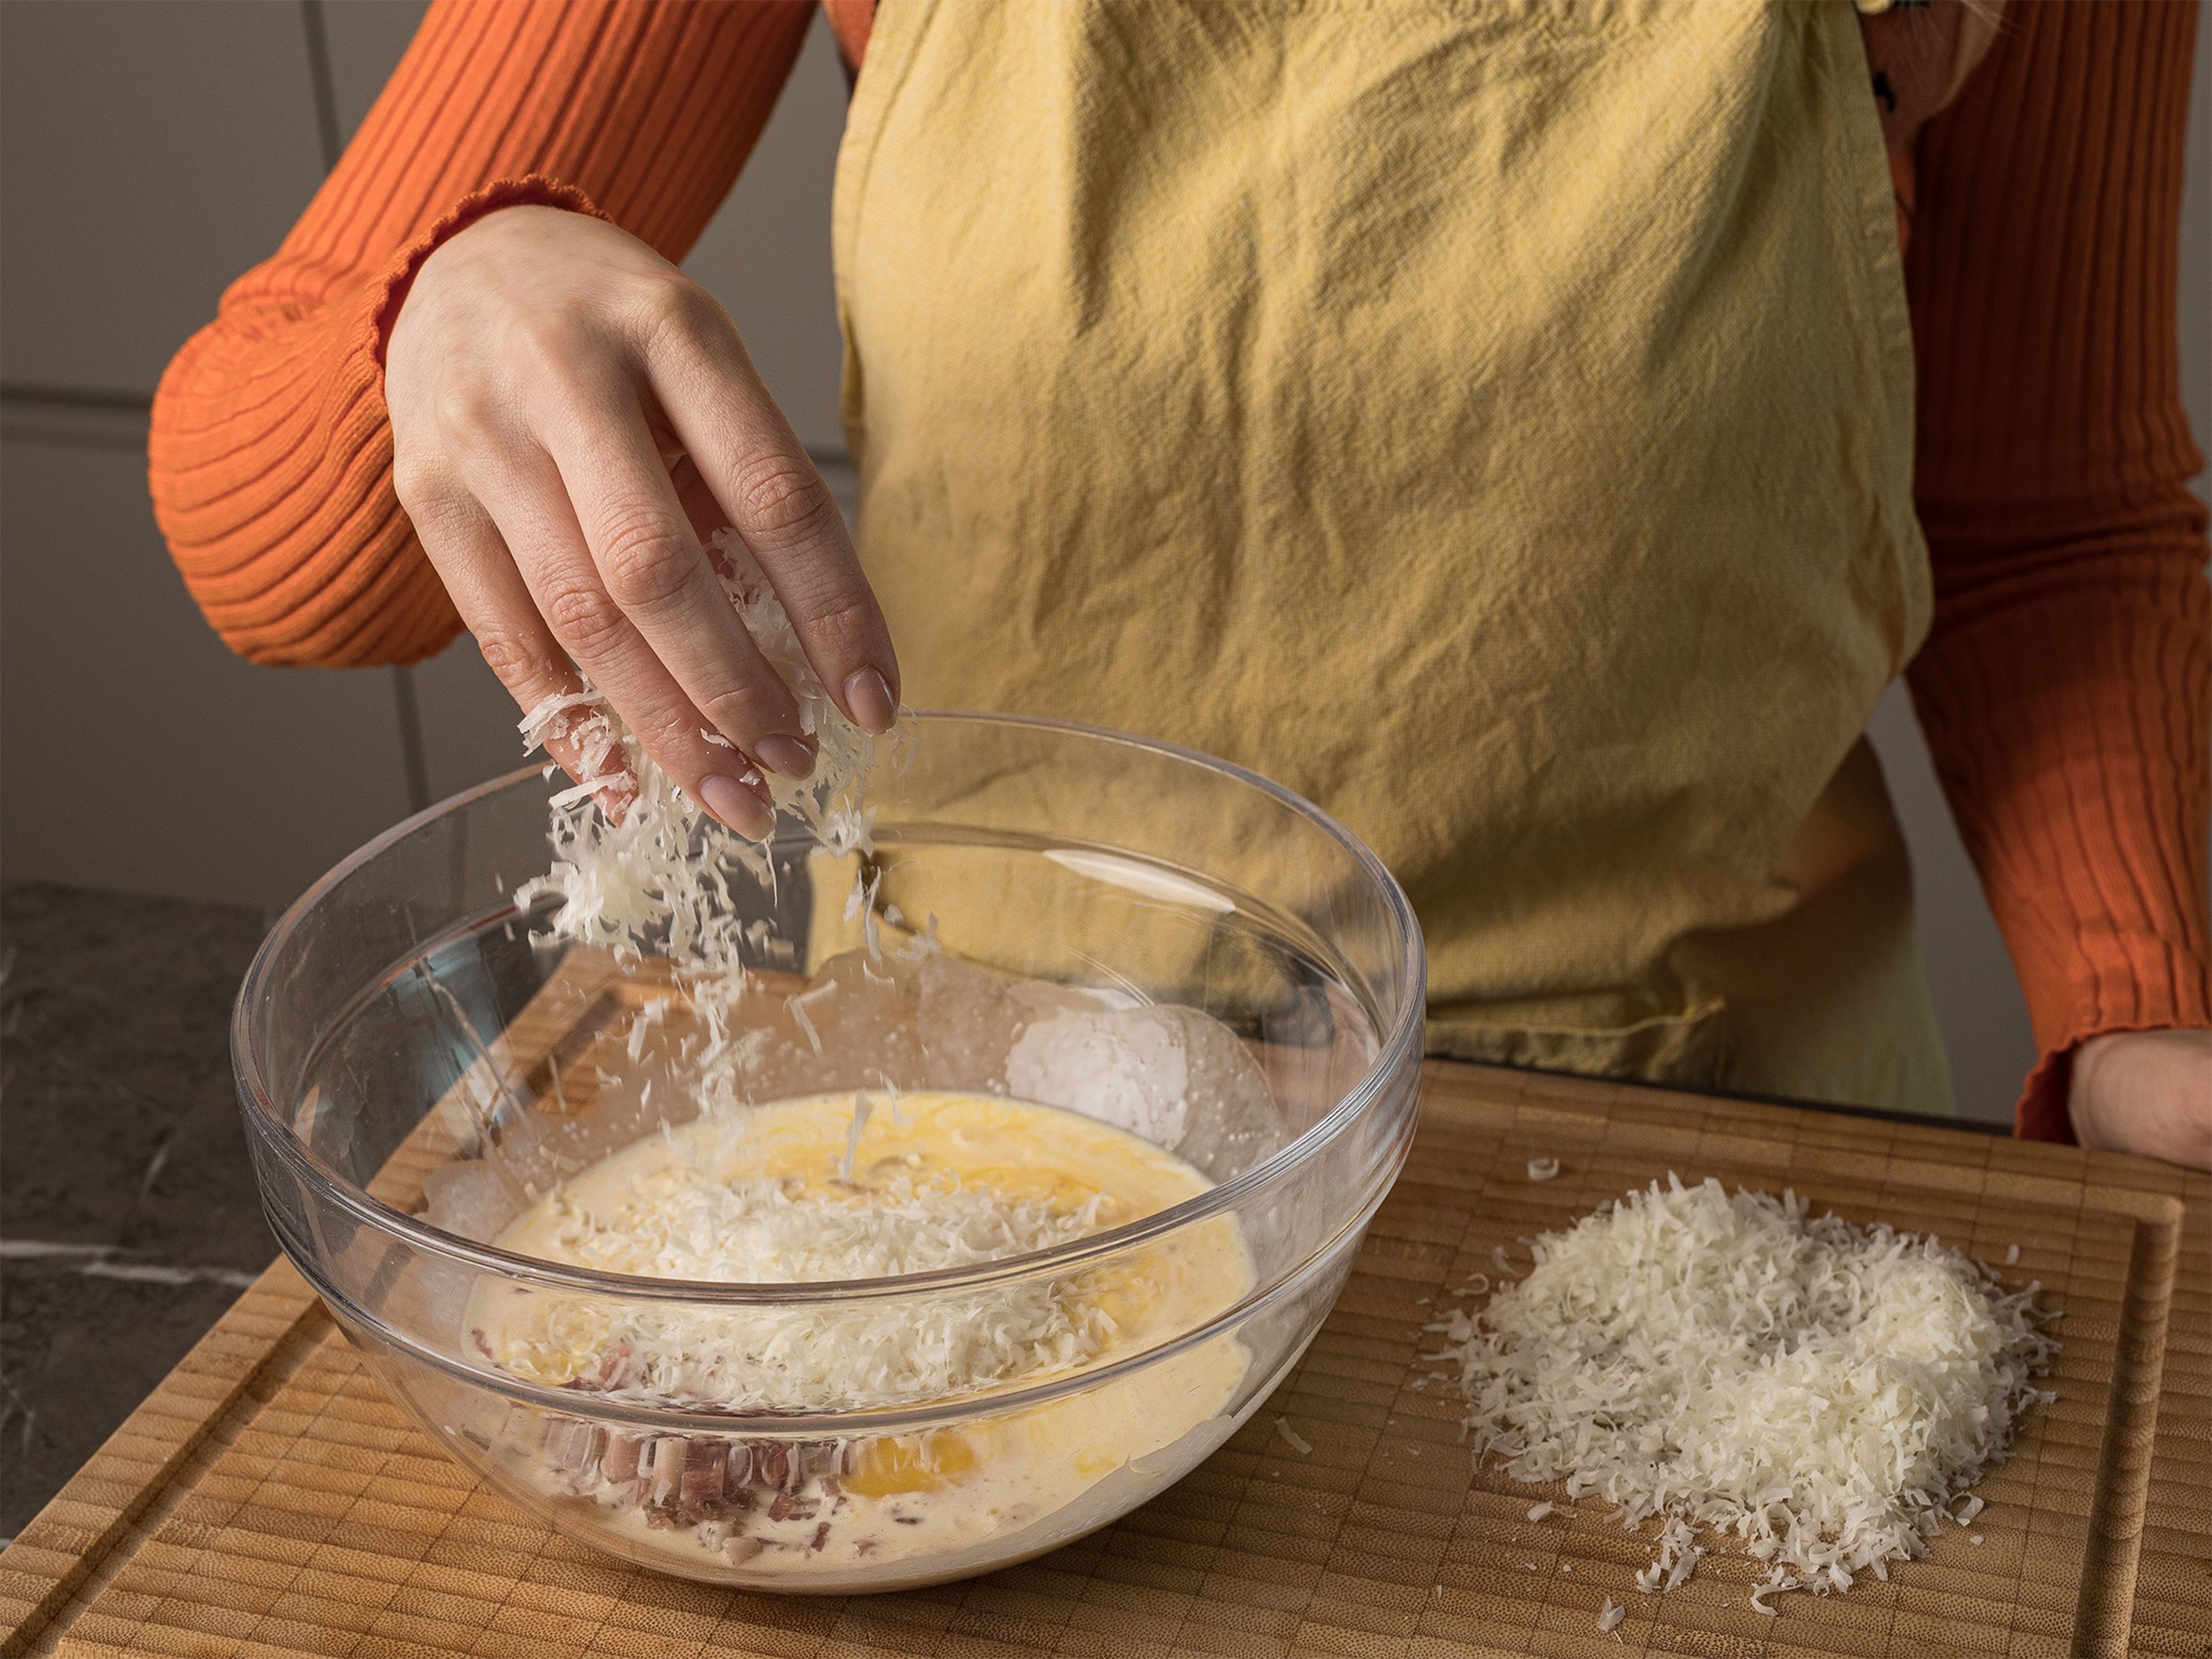 Knoblauchzehen schälen und mit dem Messerrücken zerdrücken. Parmesankäse fein reiben. In einer großen Schüssel die Eier aufschlagen und verquirlen, dann die Sahne, den geriebenen Mozzarella, den Parmesan und den Speck unterrühren. Mit Salz, Pfeffer und Muskatnuss würzen. Die gekochten Spaghetti dazugeben und alles gründlich vermischen.